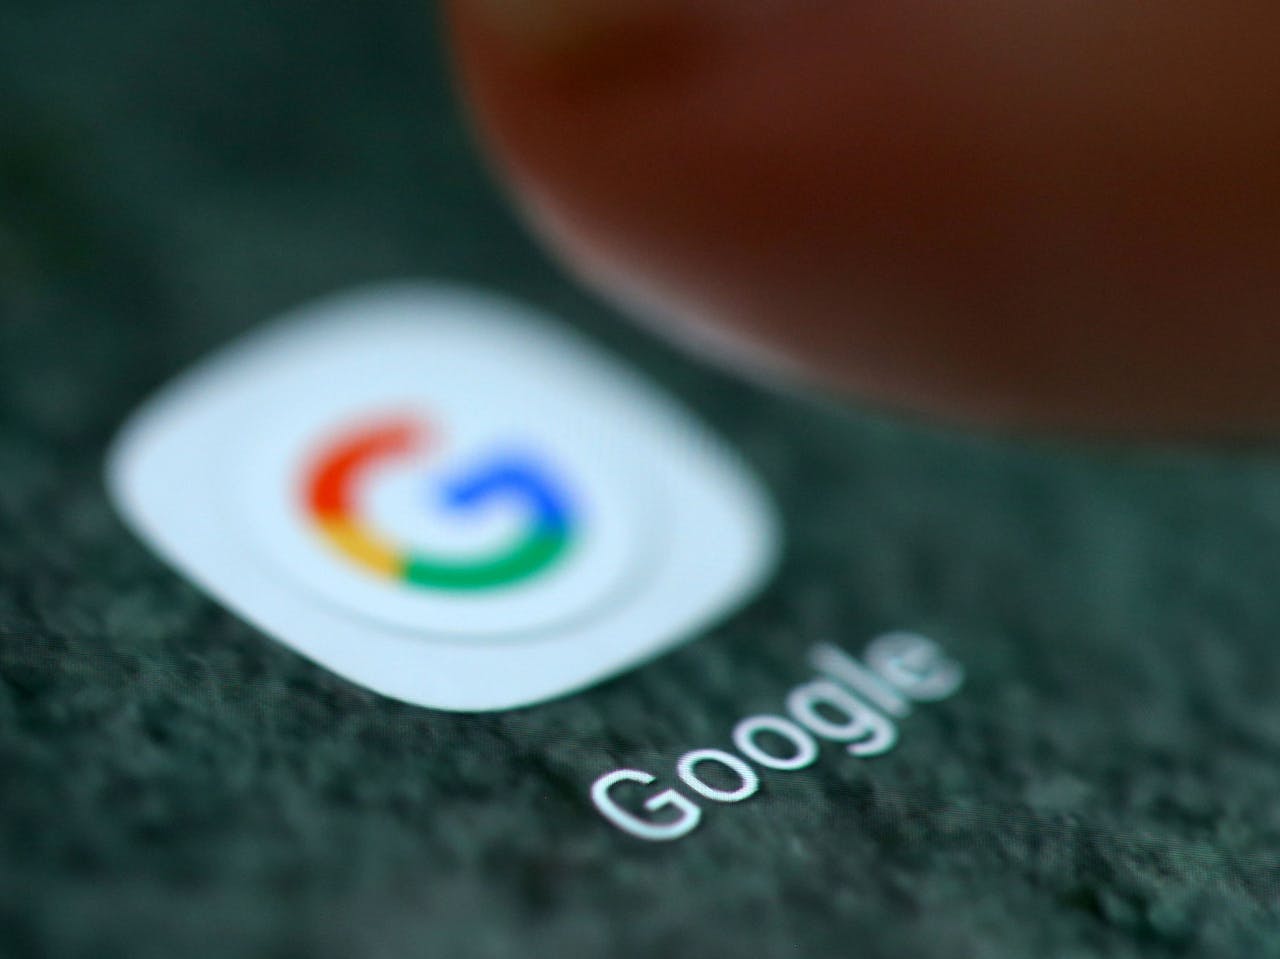 De maatregel betekent dat Google vrijwel zeker nog dominanter zal worden op de markt voor digitaal adverteren.